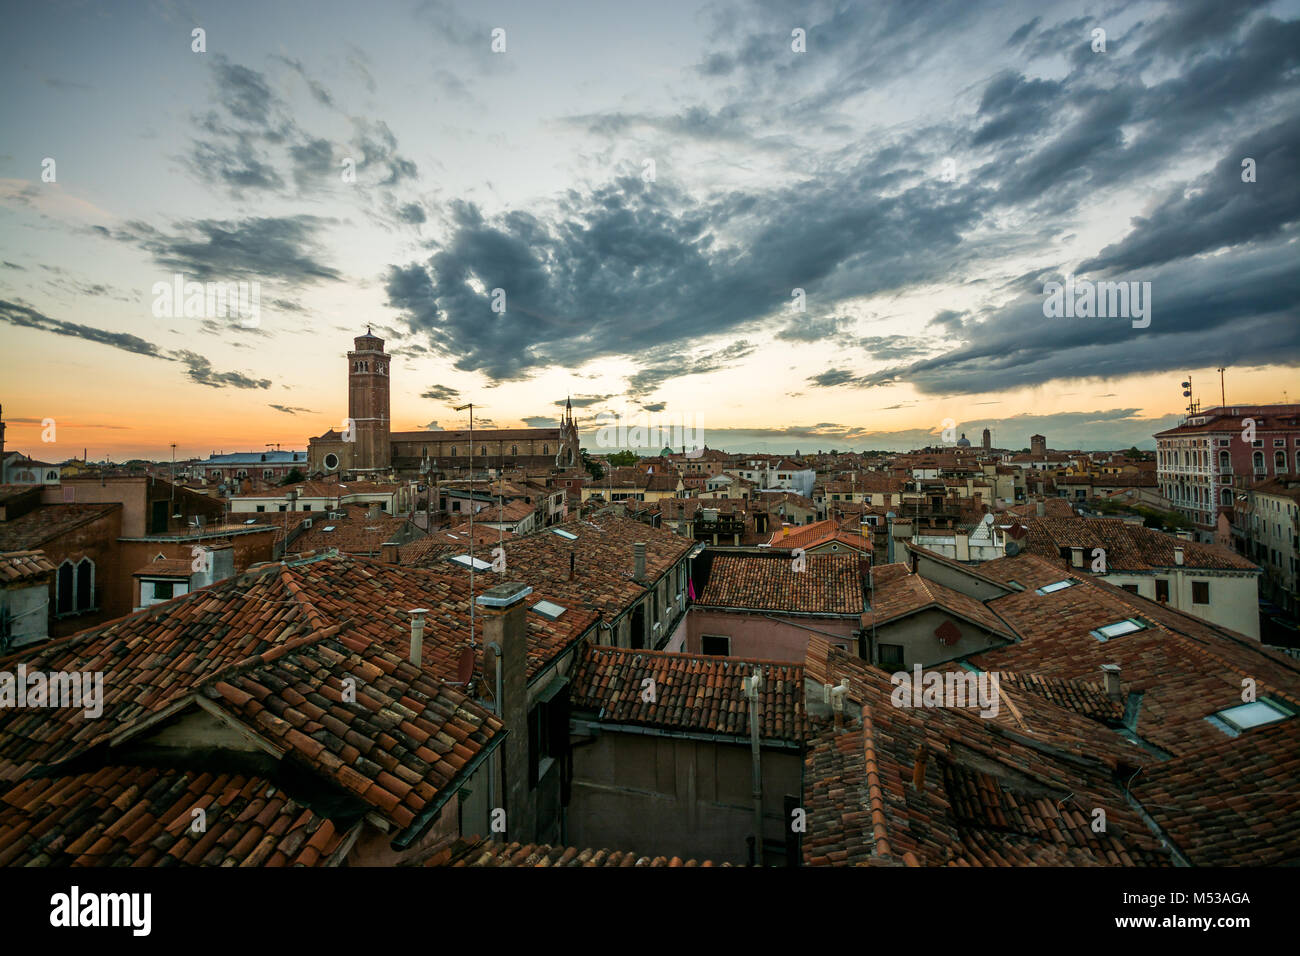 Einen schönen Sonnenuntergang/Sonnenaufgang mit Blick auf die wunderschöne Stadt Venedig, Italien, Europa venisia, 2016 Sommerurlaub Stockfoto